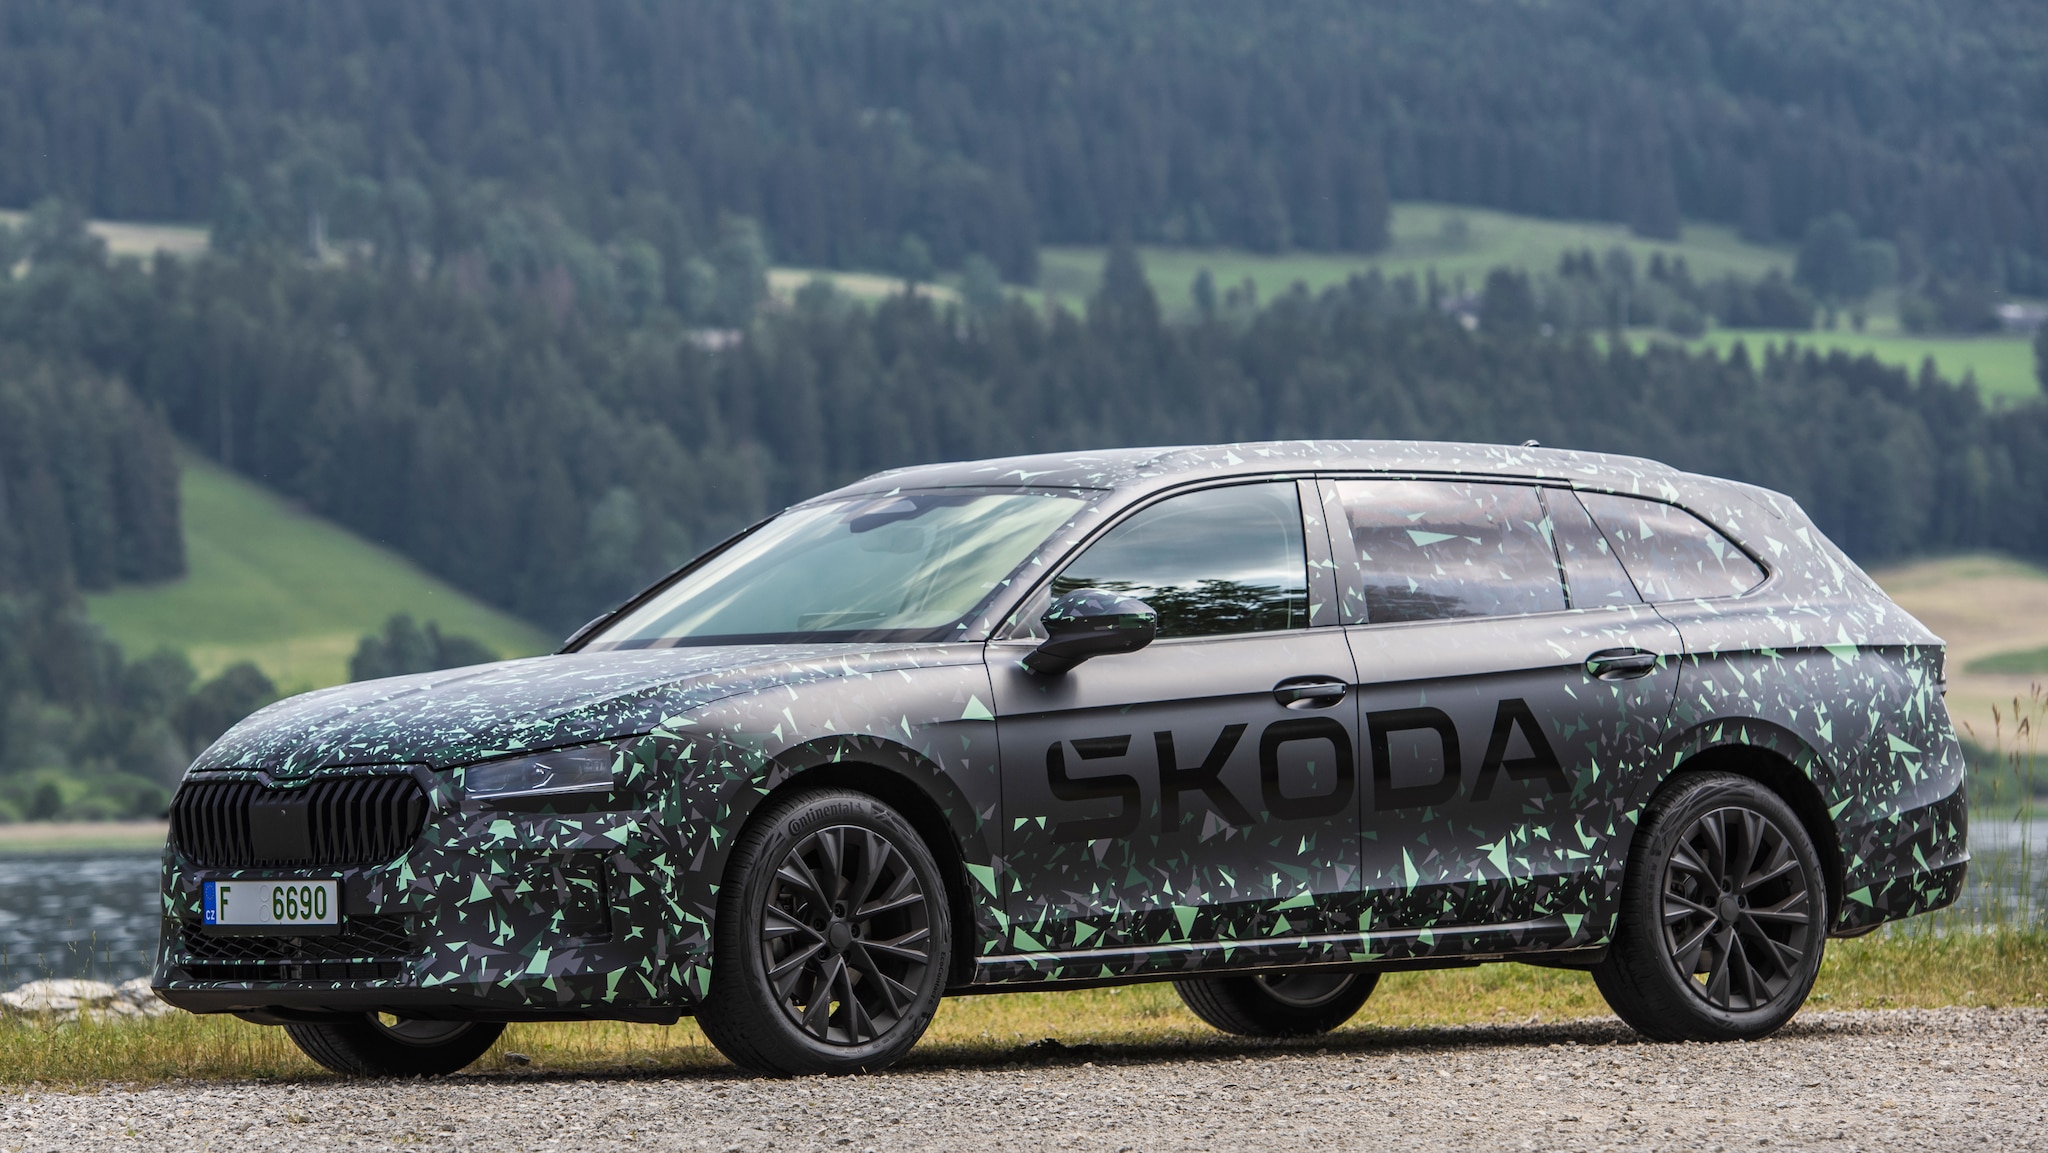 Neuer Skoda Superb (2023): Neue Passat-Limousine kommt von Skoda